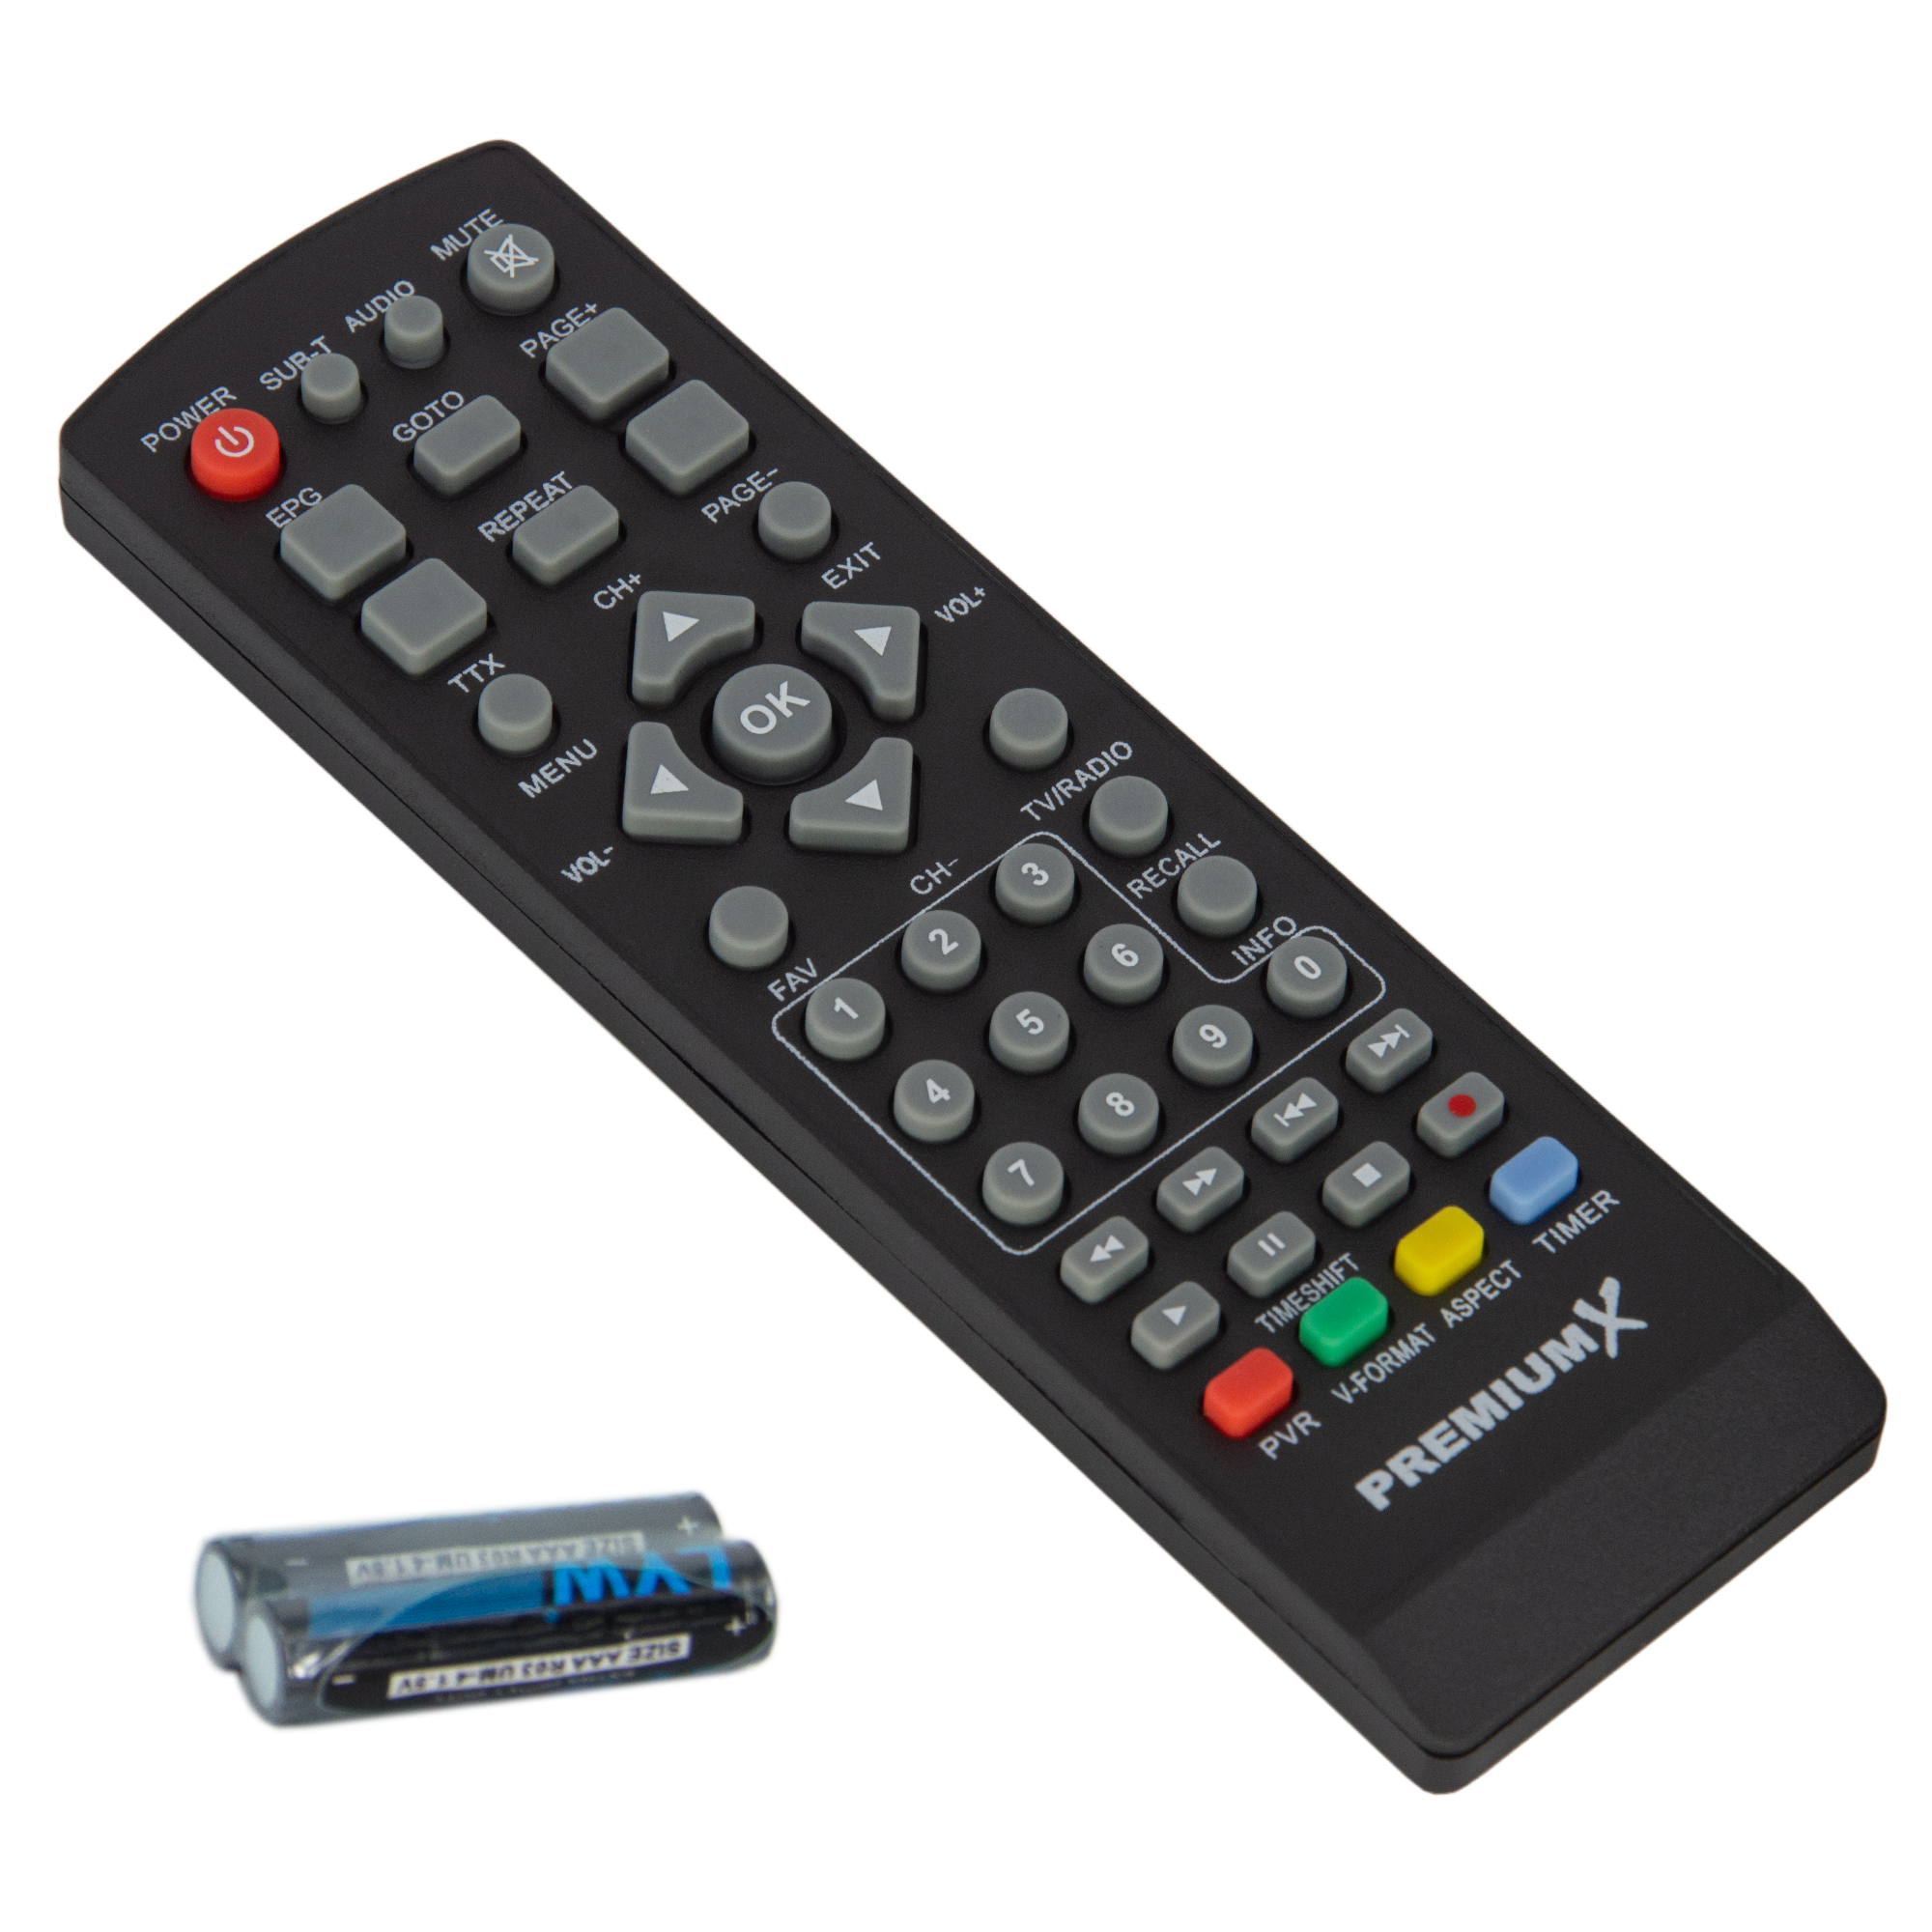 PREMIUMX FTA 540T SCART (Schwarz) Terrestrischer DVB-T2 USB DVB-T2 Receiver FullHD Receiver HDMI H.265 Digital